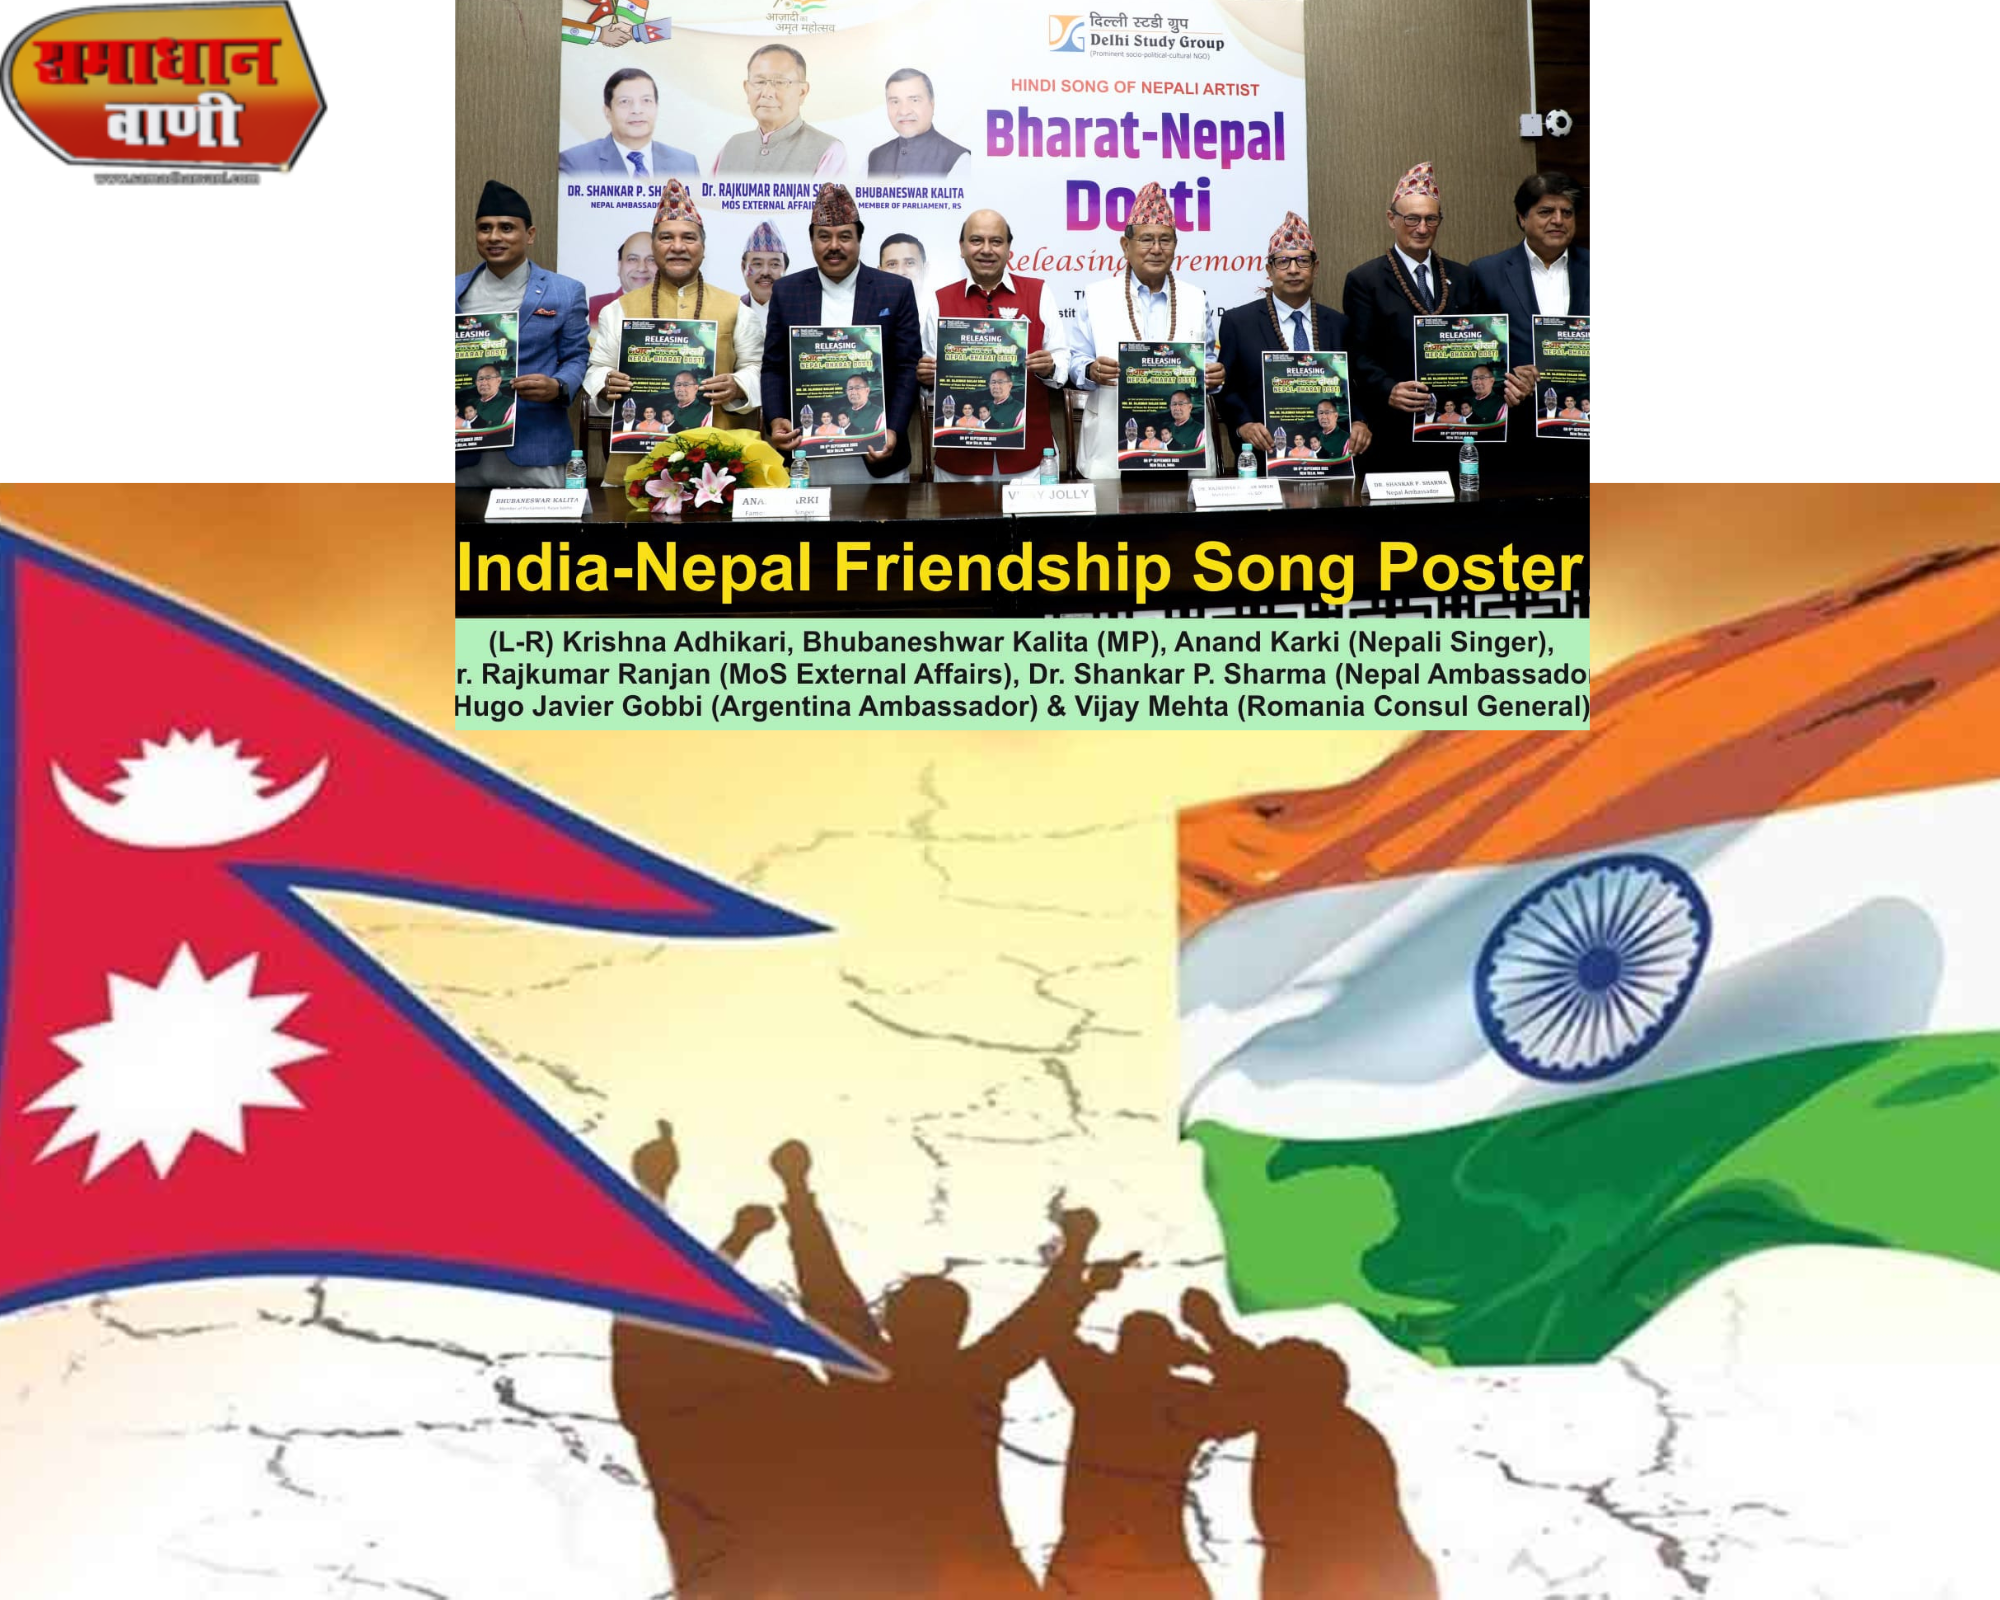 भारत-नेपाल दोस्ती-दिल से दिल तक’’नेपाली गायक आनंद कार्की ने अपने गीतों से  मंत्रमुग्ध कर दिया